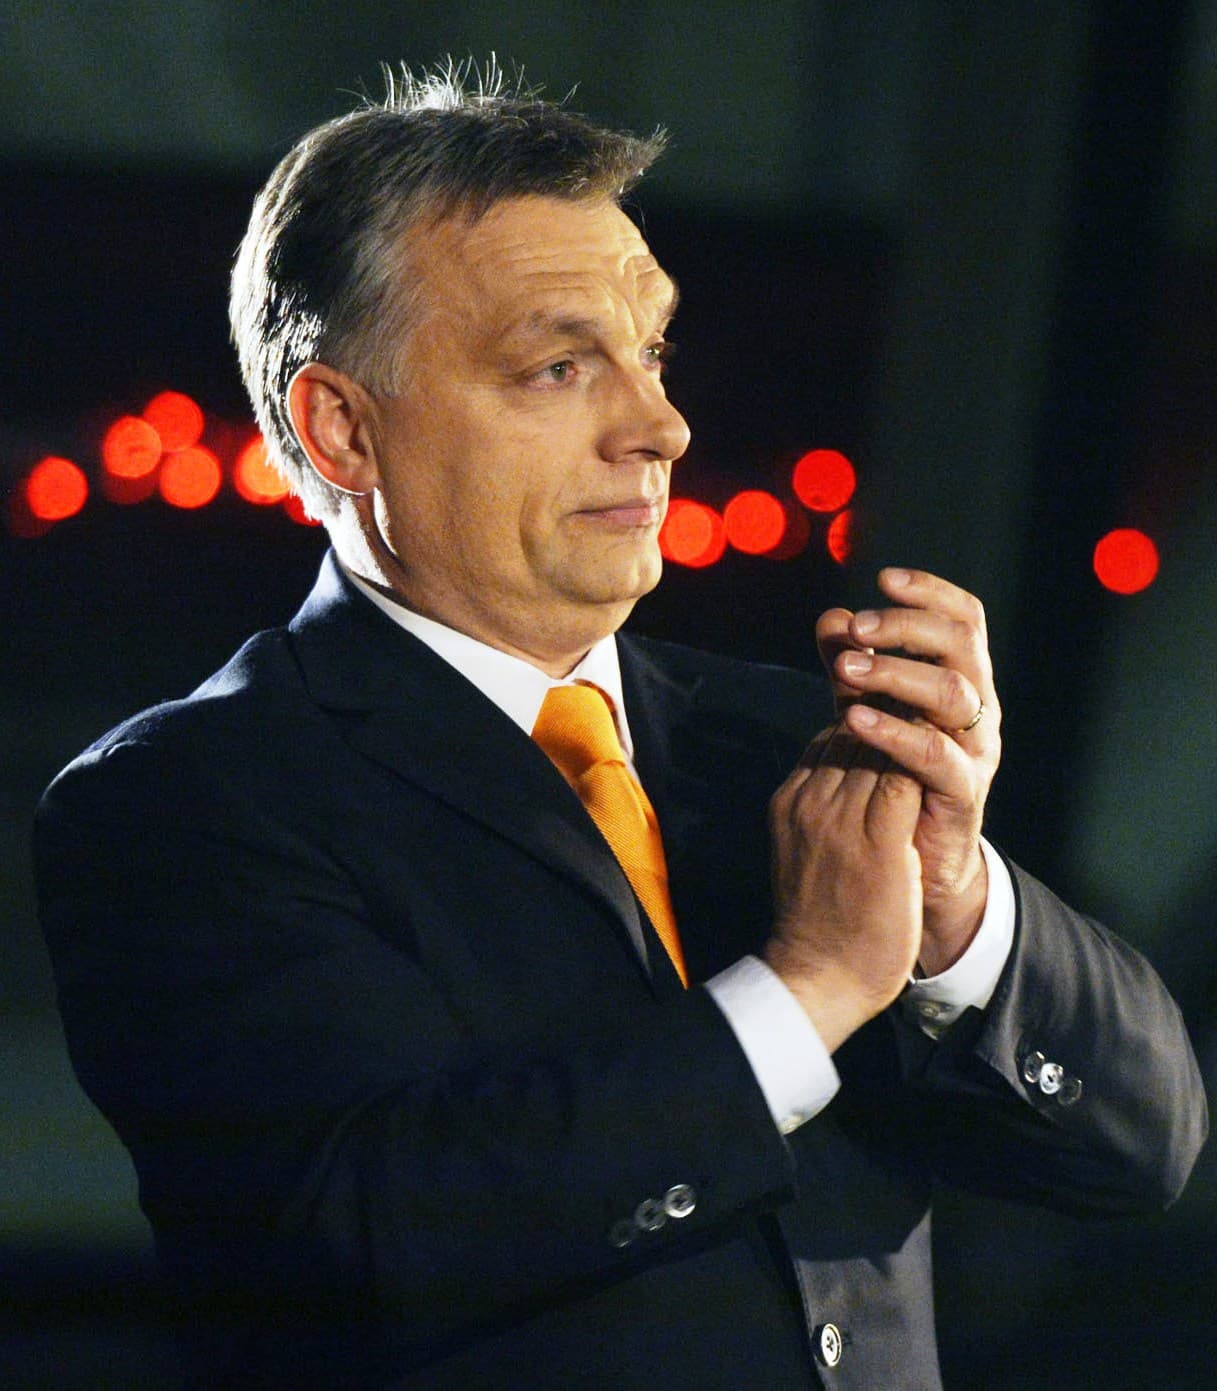 A Spiegel úgy értesült, nem zárják ki Orbánékat az Európai Néppártból